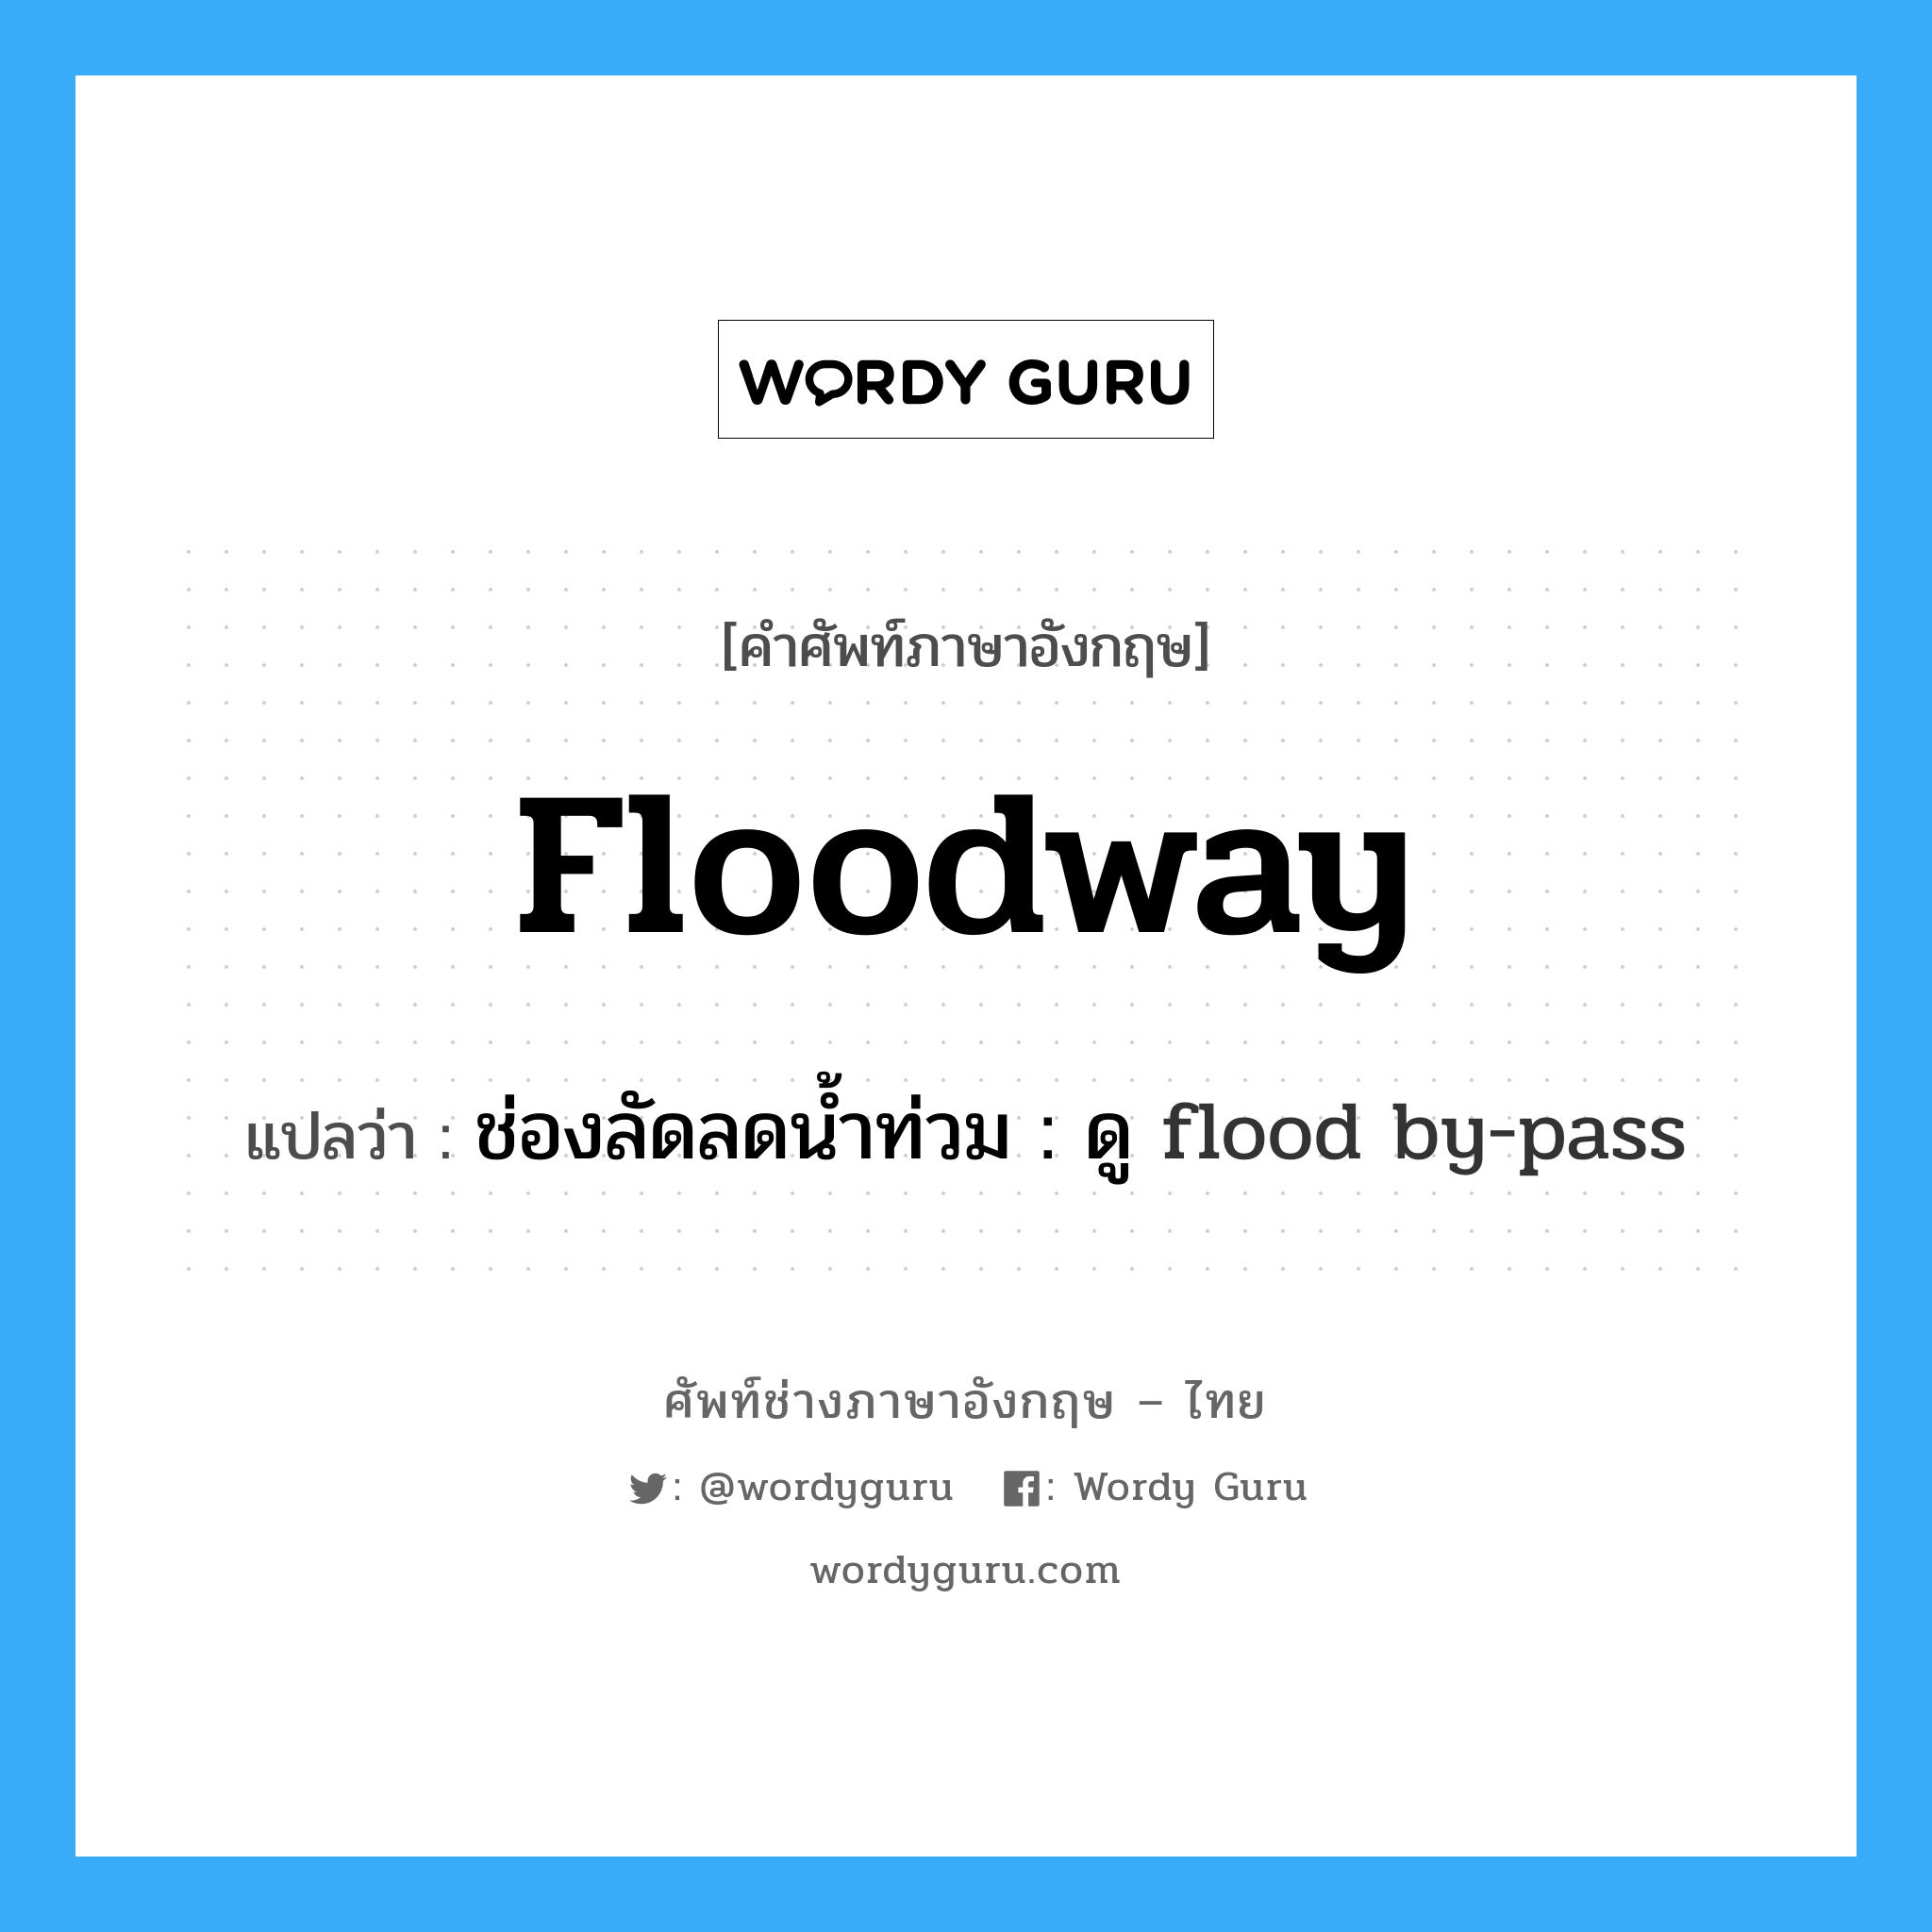 ช่องลัดลดน้ำท่วม : ดู flood by-pass ภาษาอังกฤษ?, คำศัพท์ช่างภาษาอังกฤษ - ไทย ช่องลัดลดน้ำท่วม : ดู flood by-pass คำศัพท์ภาษาอังกฤษ ช่องลัดลดน้ำท่วม : ดู flood by-pass แปลว่า floodway